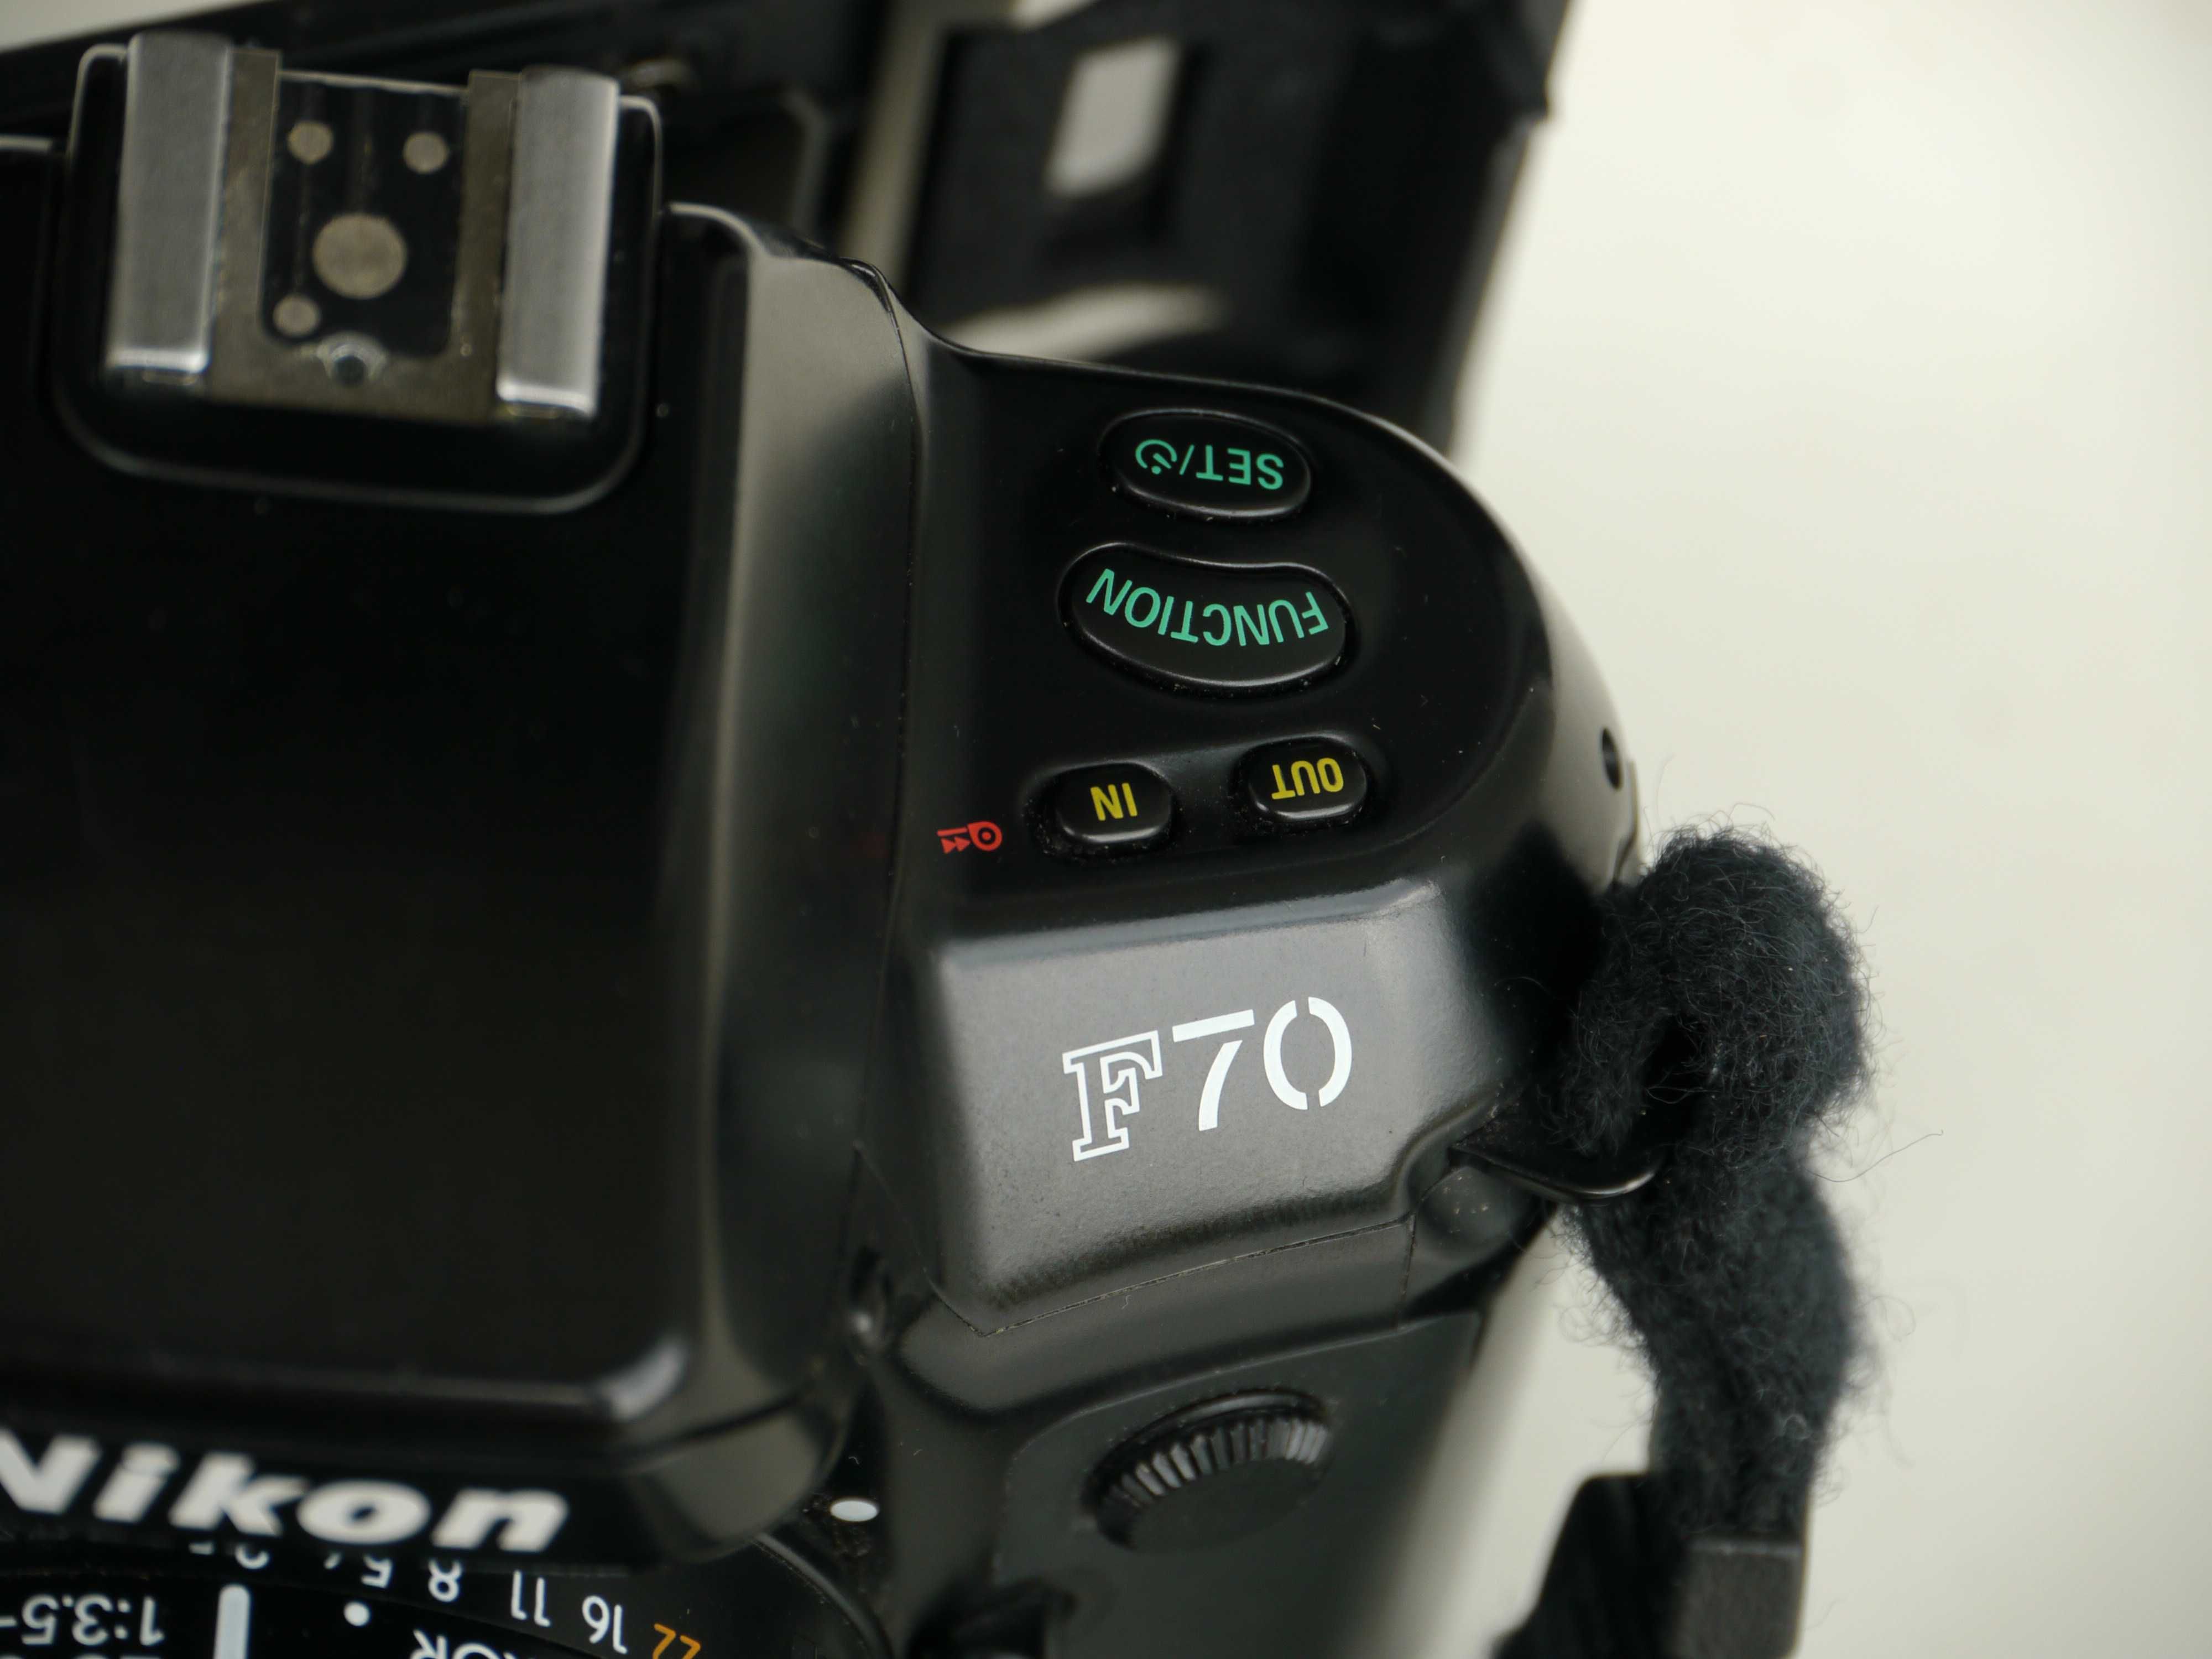 Lustrzanka analogowa Nikon F70+obiektyw Nikkor 28-80 1:3.5-5.6D